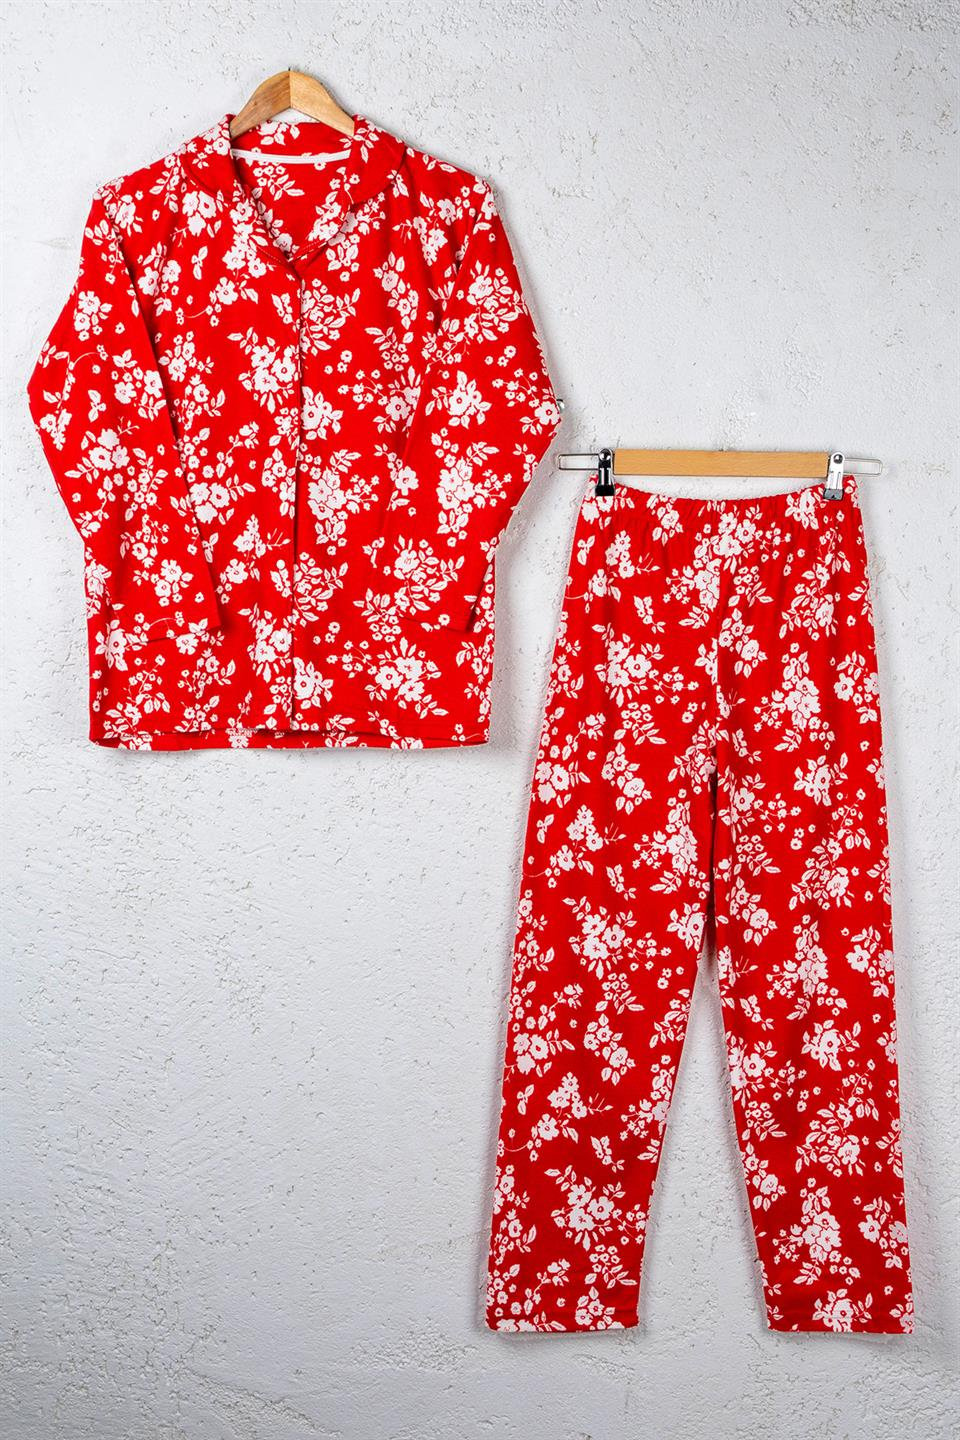 Işılay Kadın İnterlok Pijama Takımı 8753 - Kırmızı Desenli